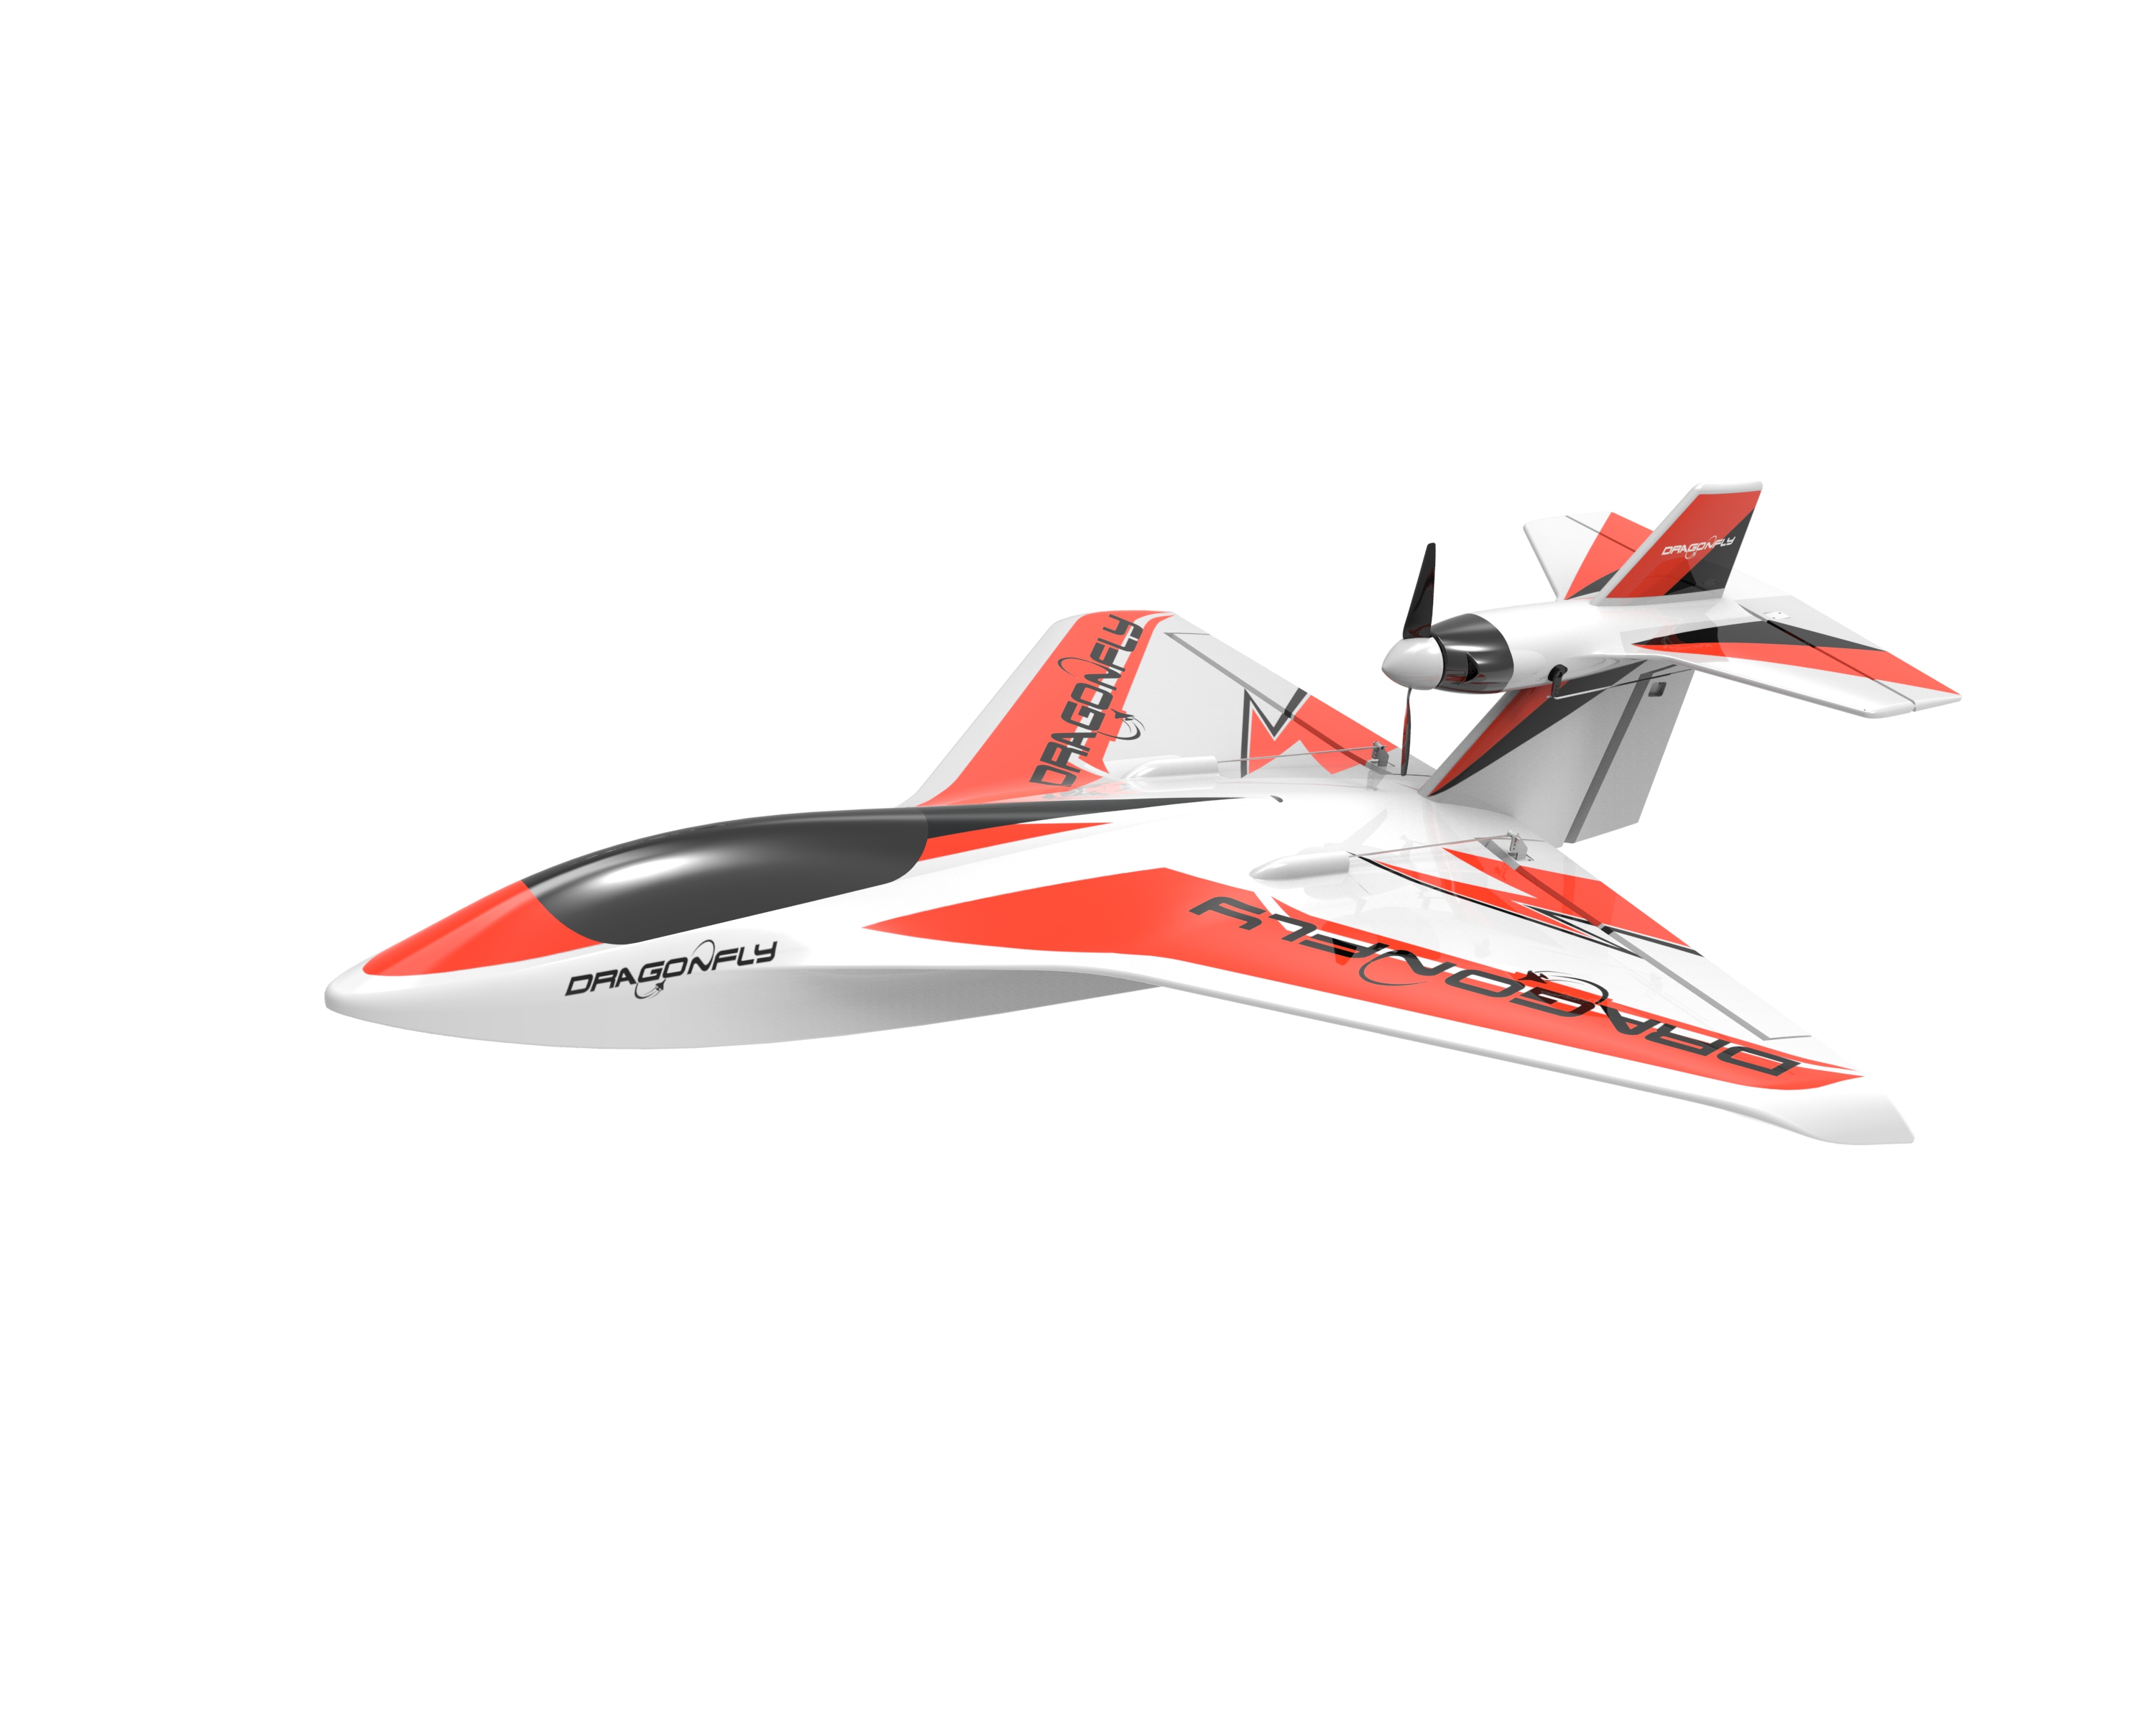 Dragonfly Seaplane V3 ATL Sport Model All Terrain Launching R/C Brushless Airplane